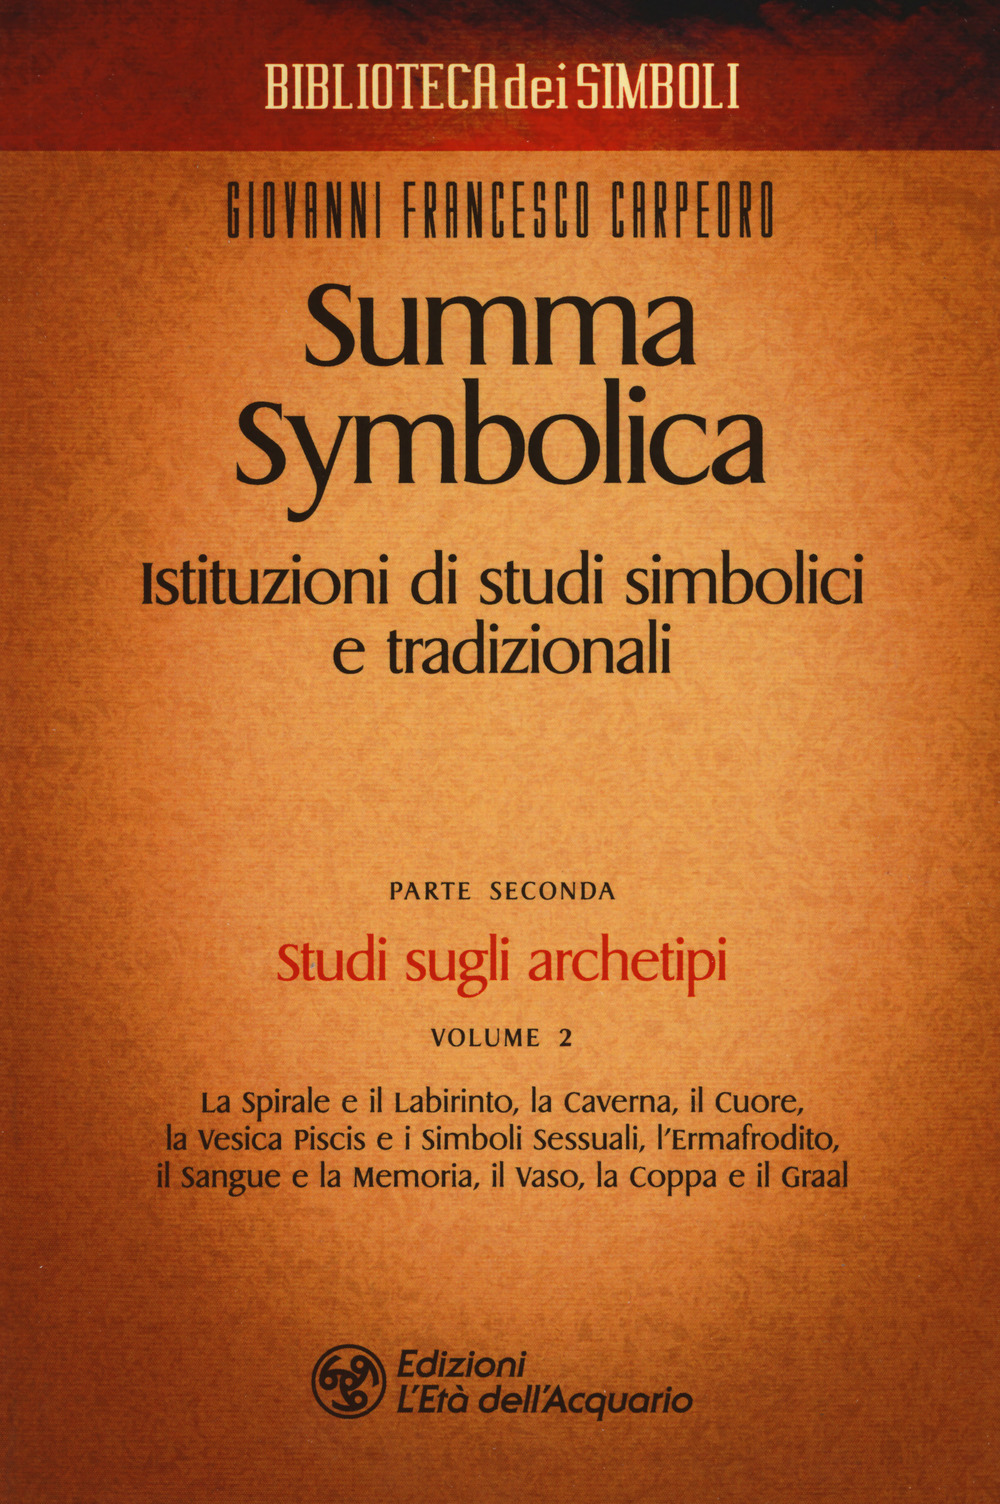 Summa symbolica. Istituzioni di studi simbolici e tradizionali. Vol. 2/2: Studi sugli archetipi